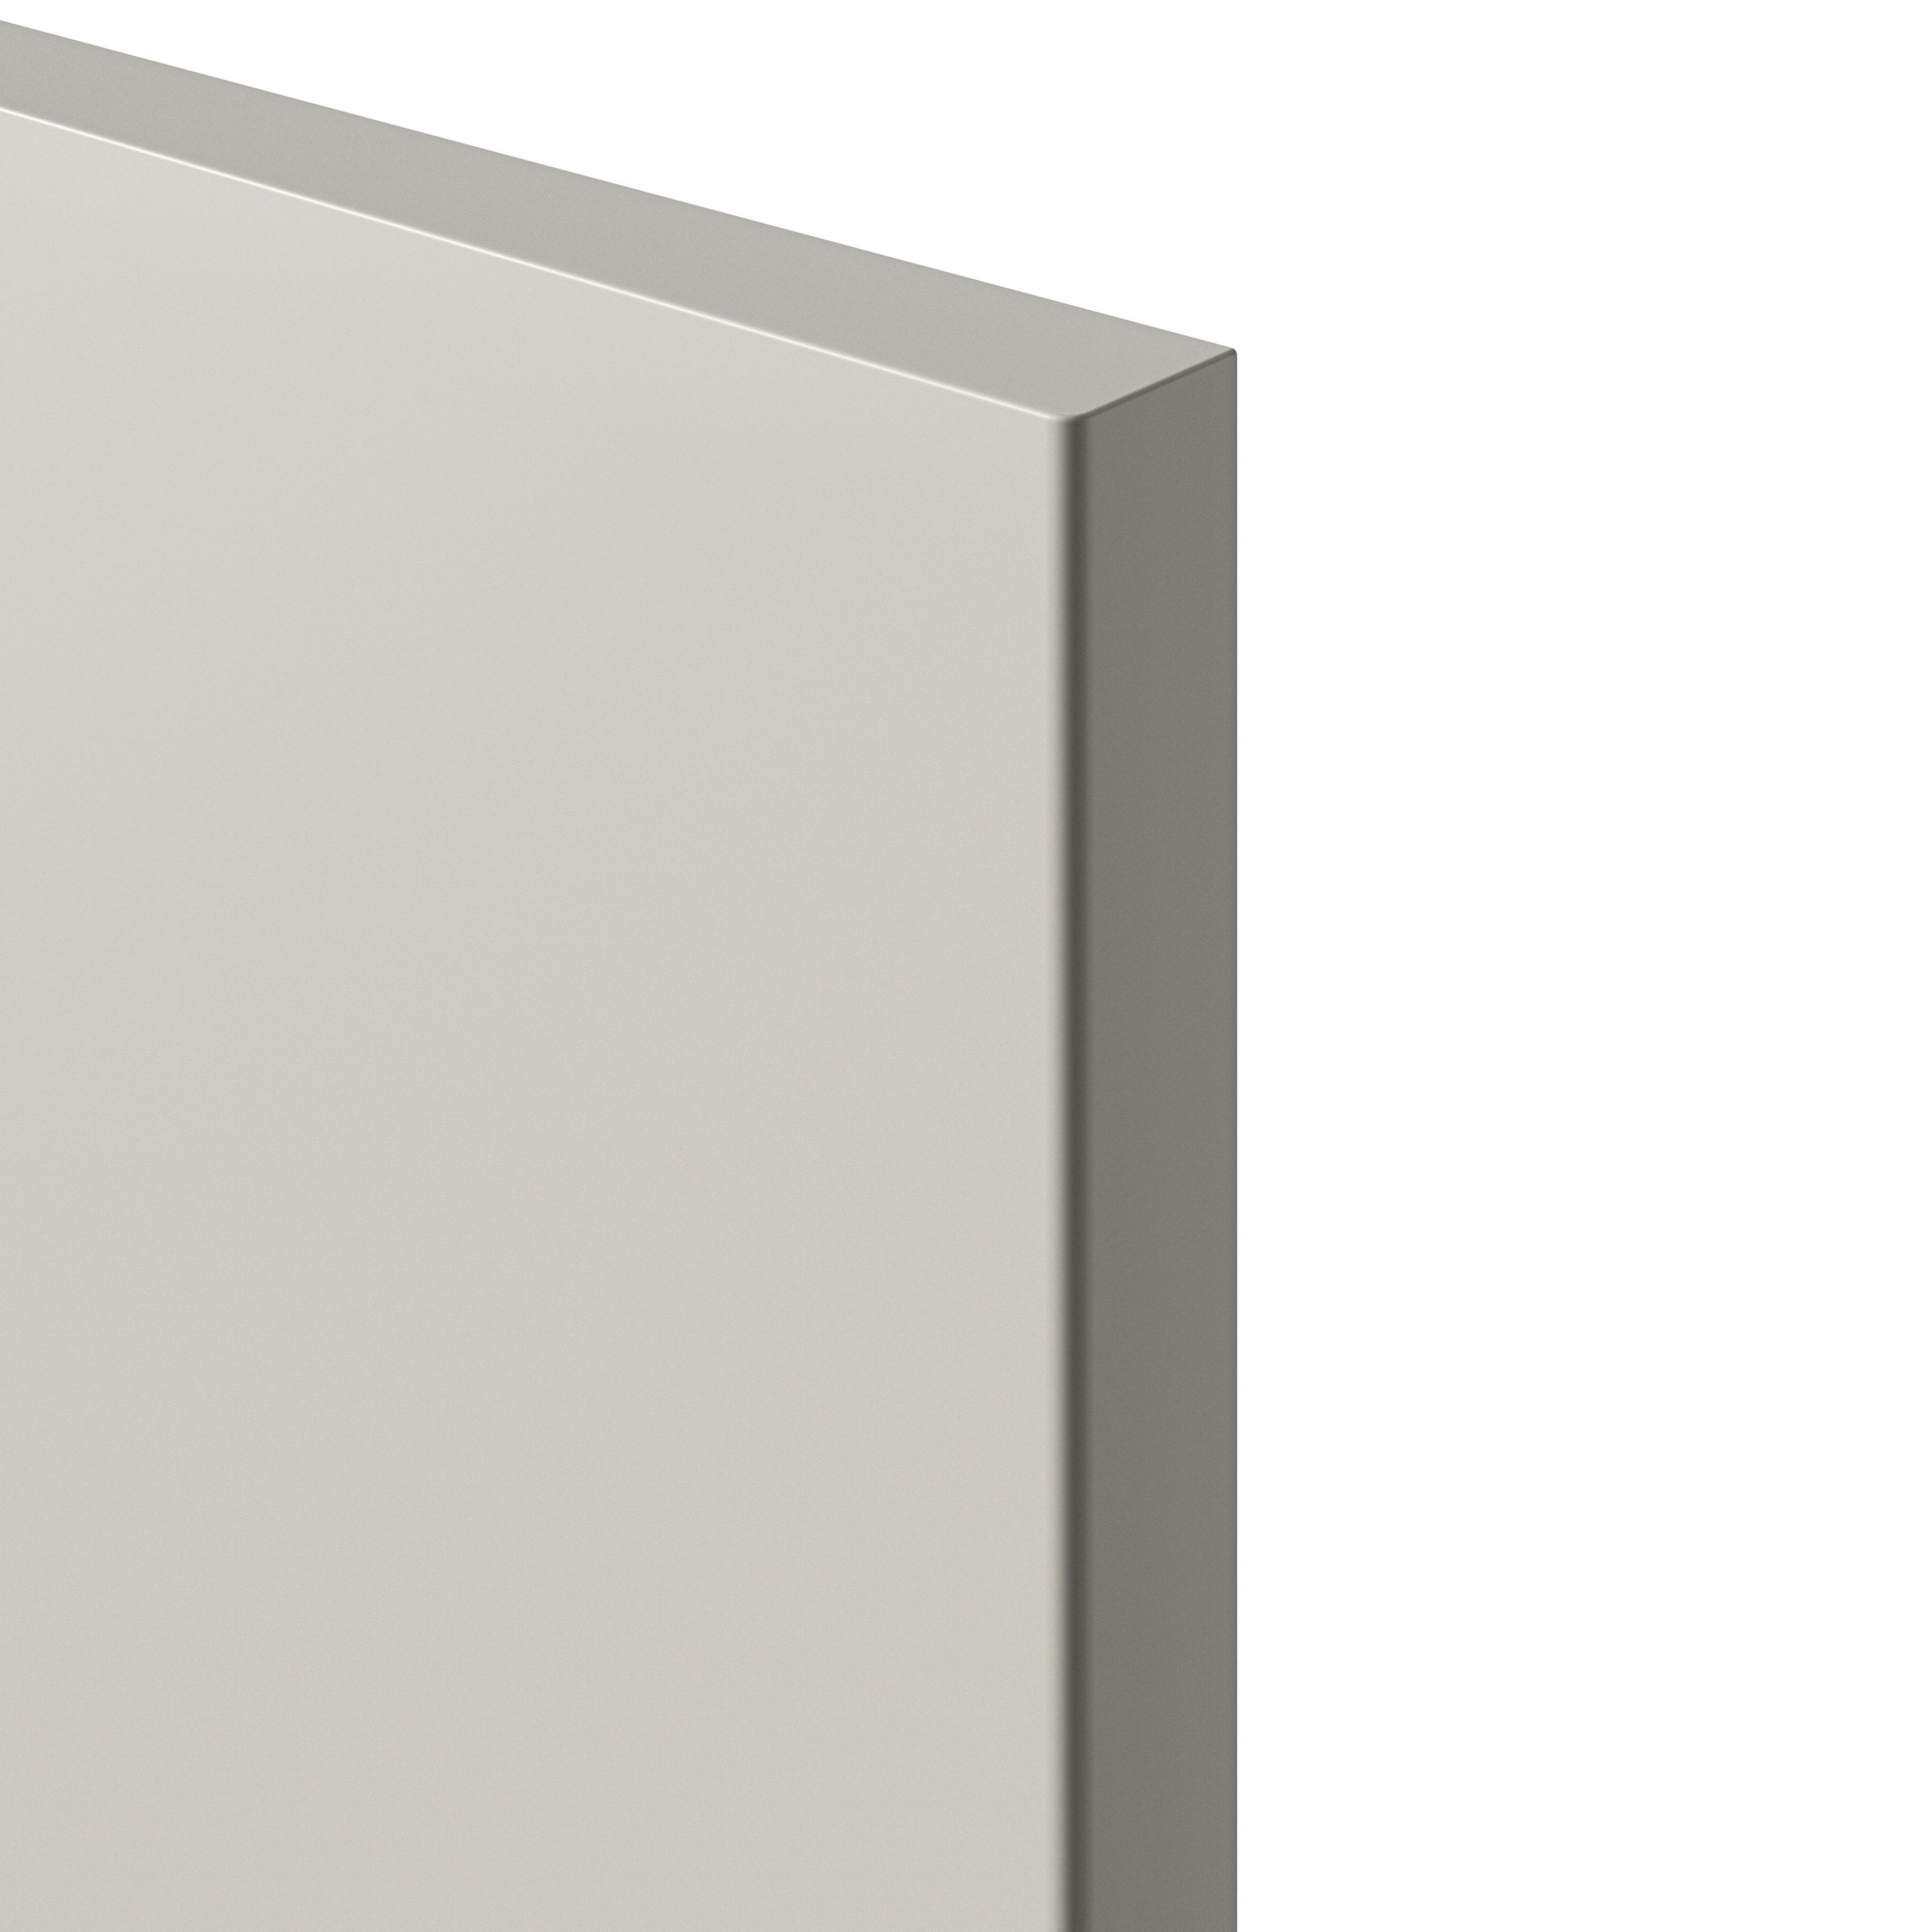 GoodHome Stevia Matt sandstone Drawer front, bridging door & bi fold door, (W)500mm (H)356mm (T)18mm